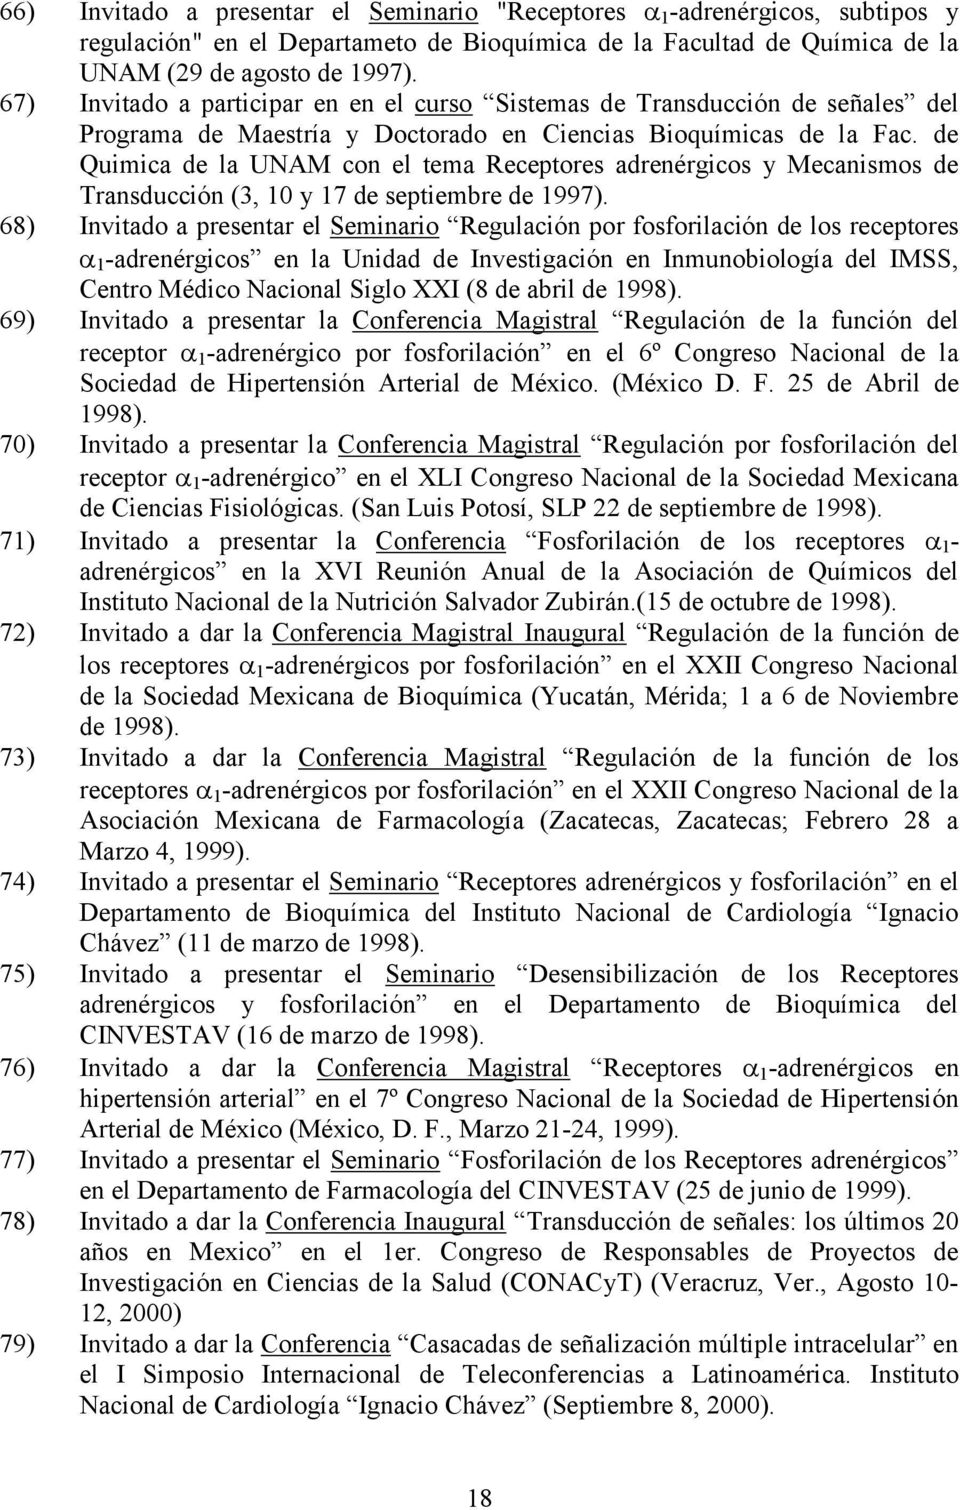 de Quimica de la UNAM con el tema Receptores adrenérgicos y Mecanismos de Transducción (3, 10 y 17 de septiembre de 1997).